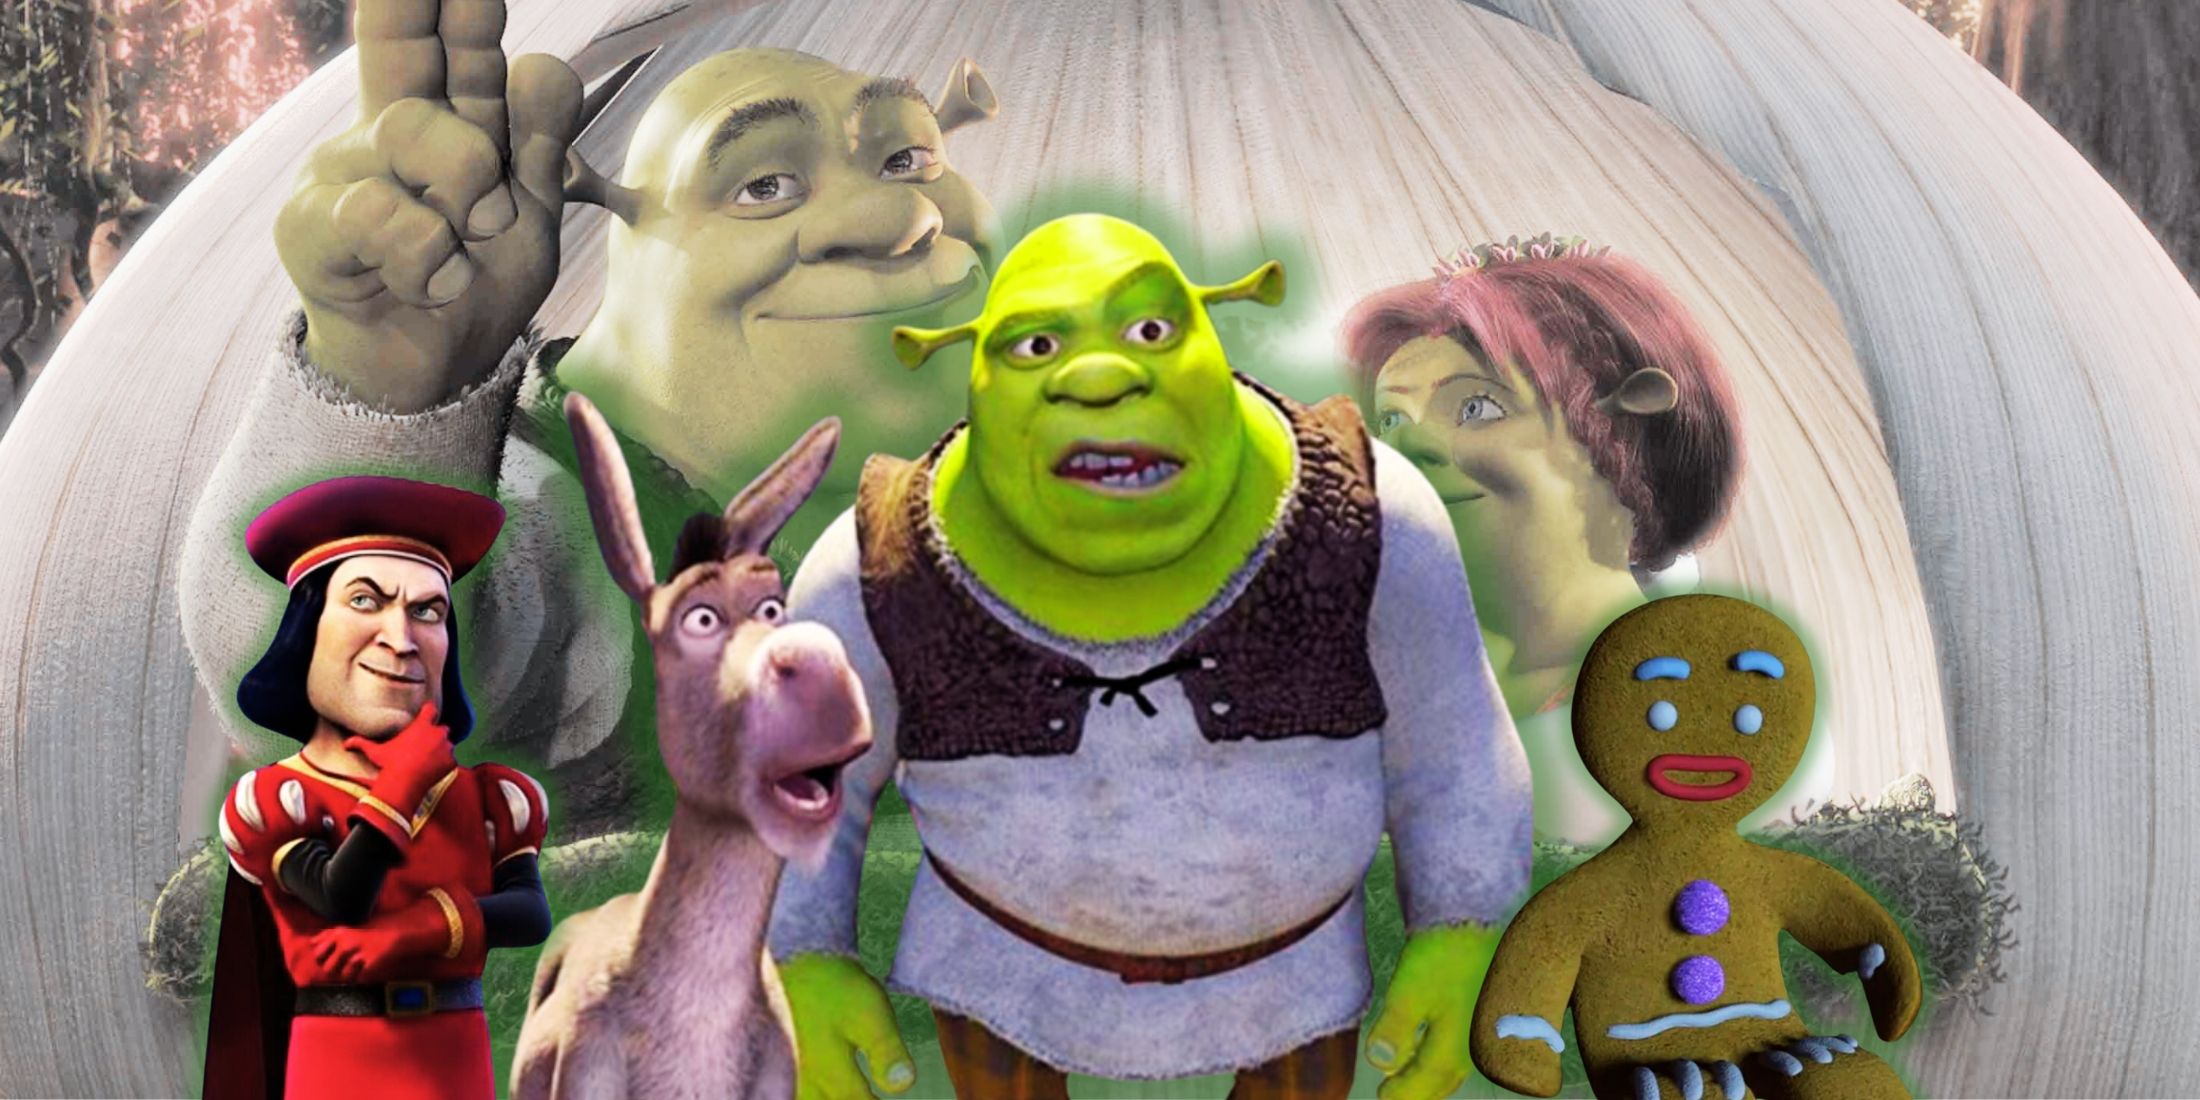 Os personagens de Shrek Farquaad, Donkey, Shrek e Gingy aparecem sobre uma imagem de Shrek e Fiona em sua carruagem de cebola